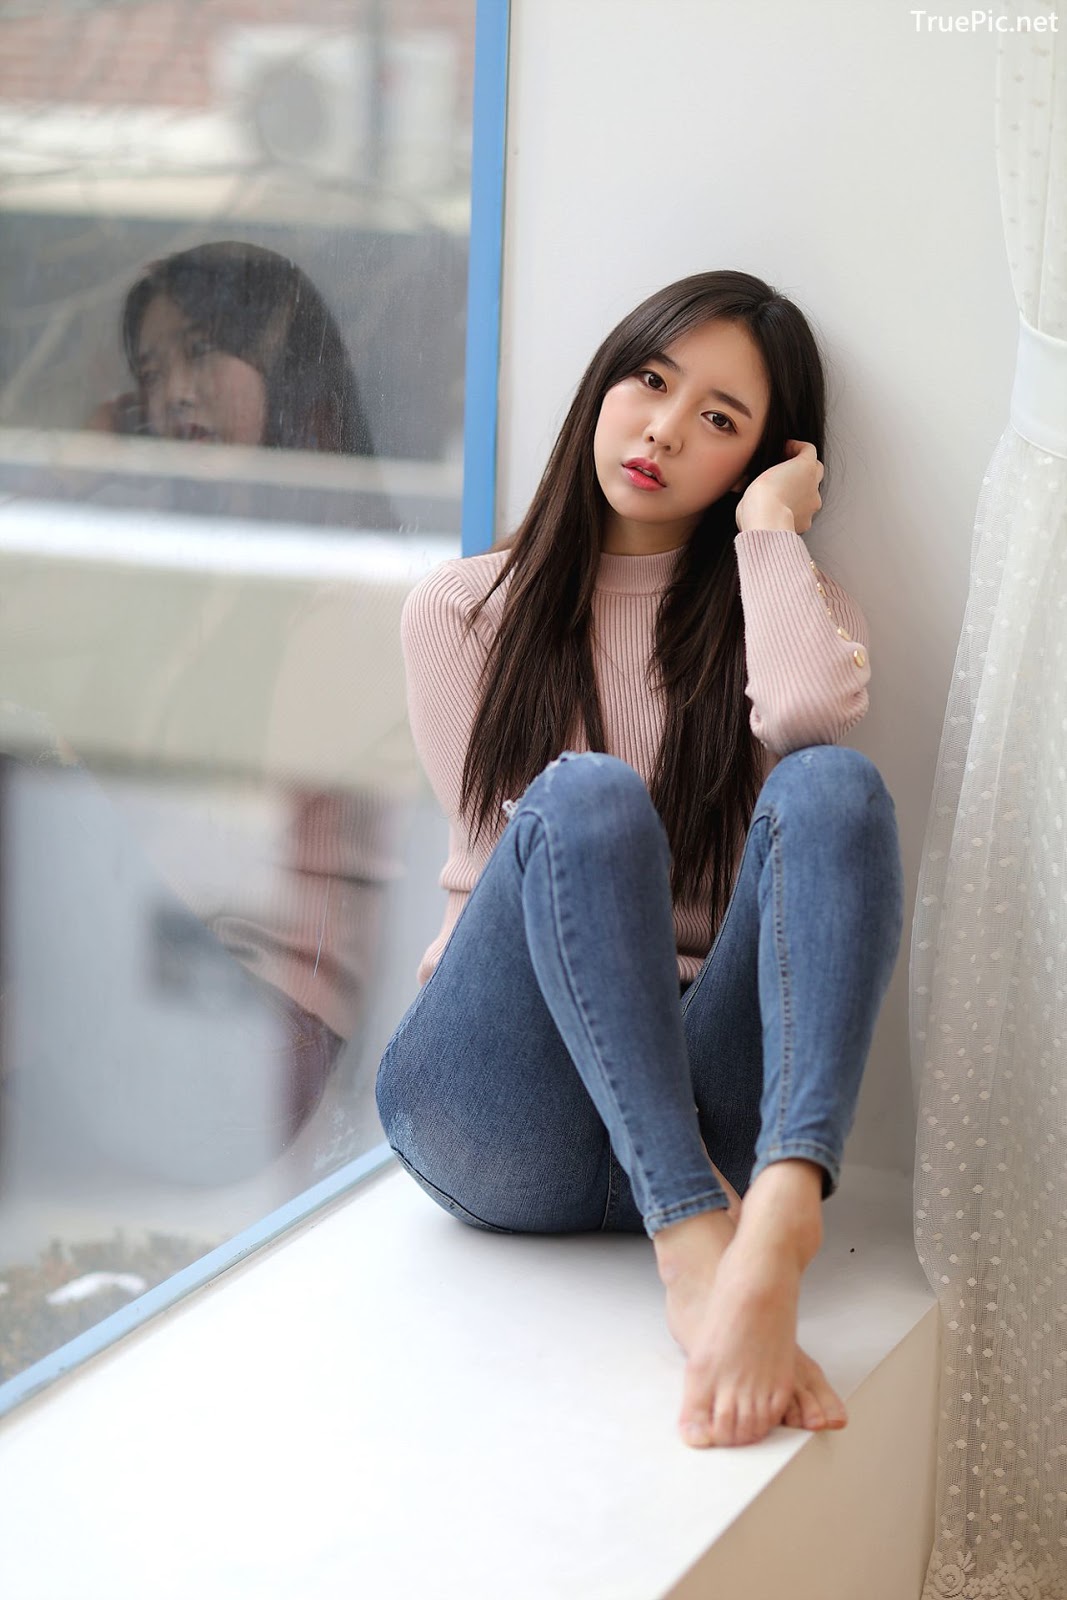 Image-Korean-Hot-Model-Go-Eun-Yang-Indoor-Photoshoot-Collection-TruePic.net- Picture-63